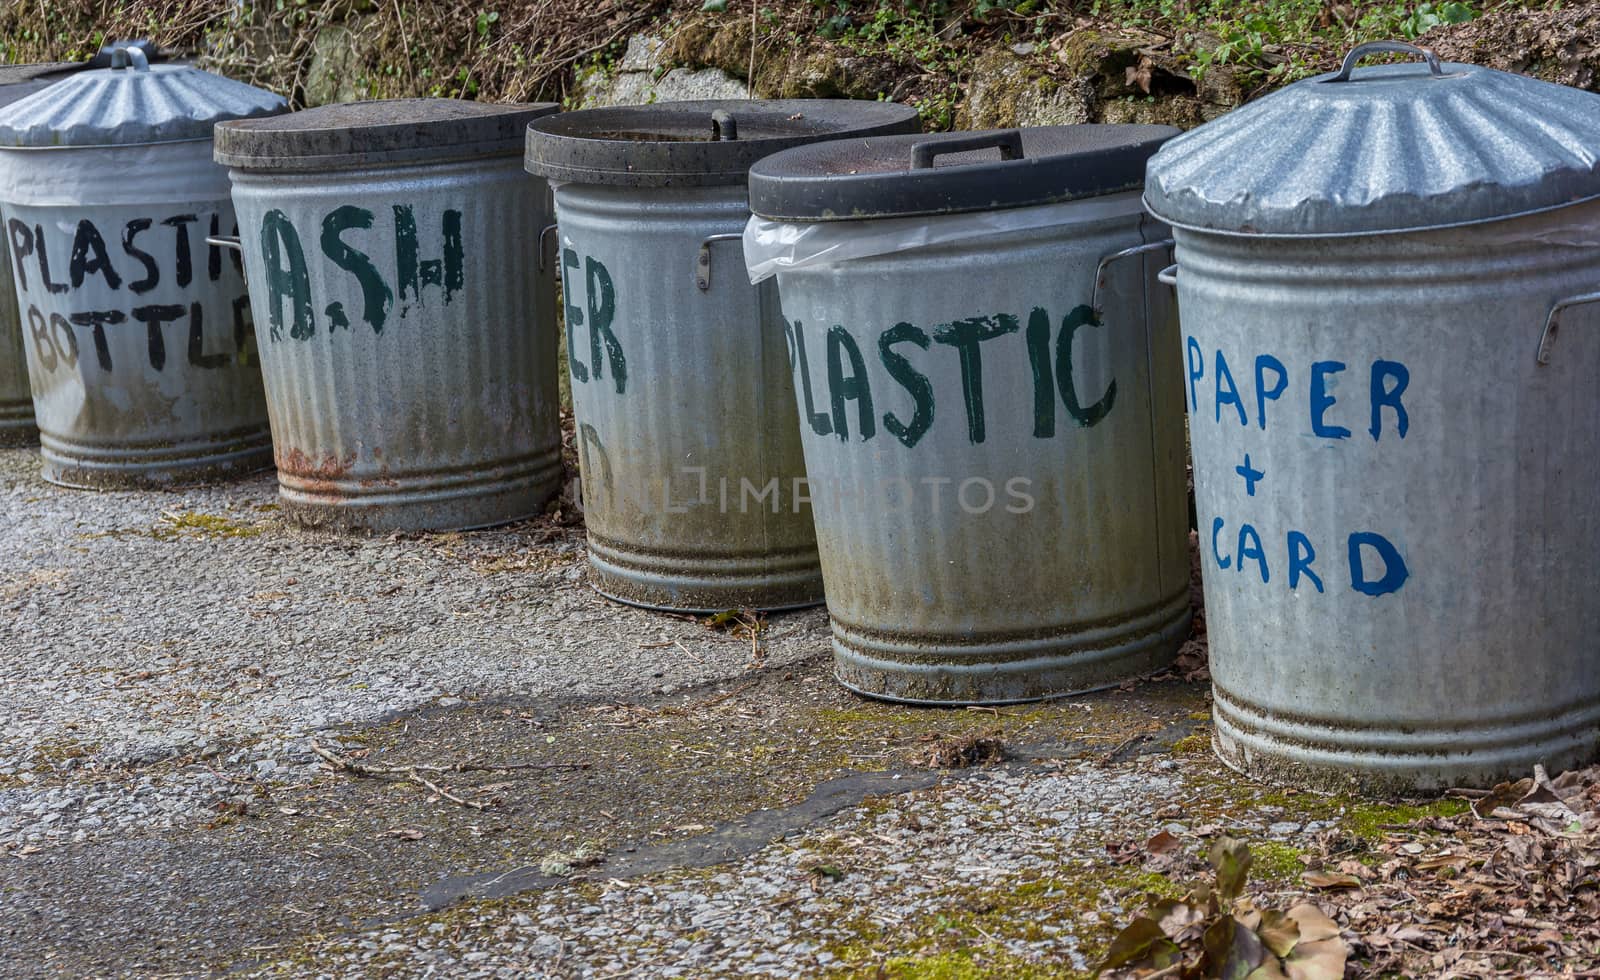 Metal outdoor recycling bins